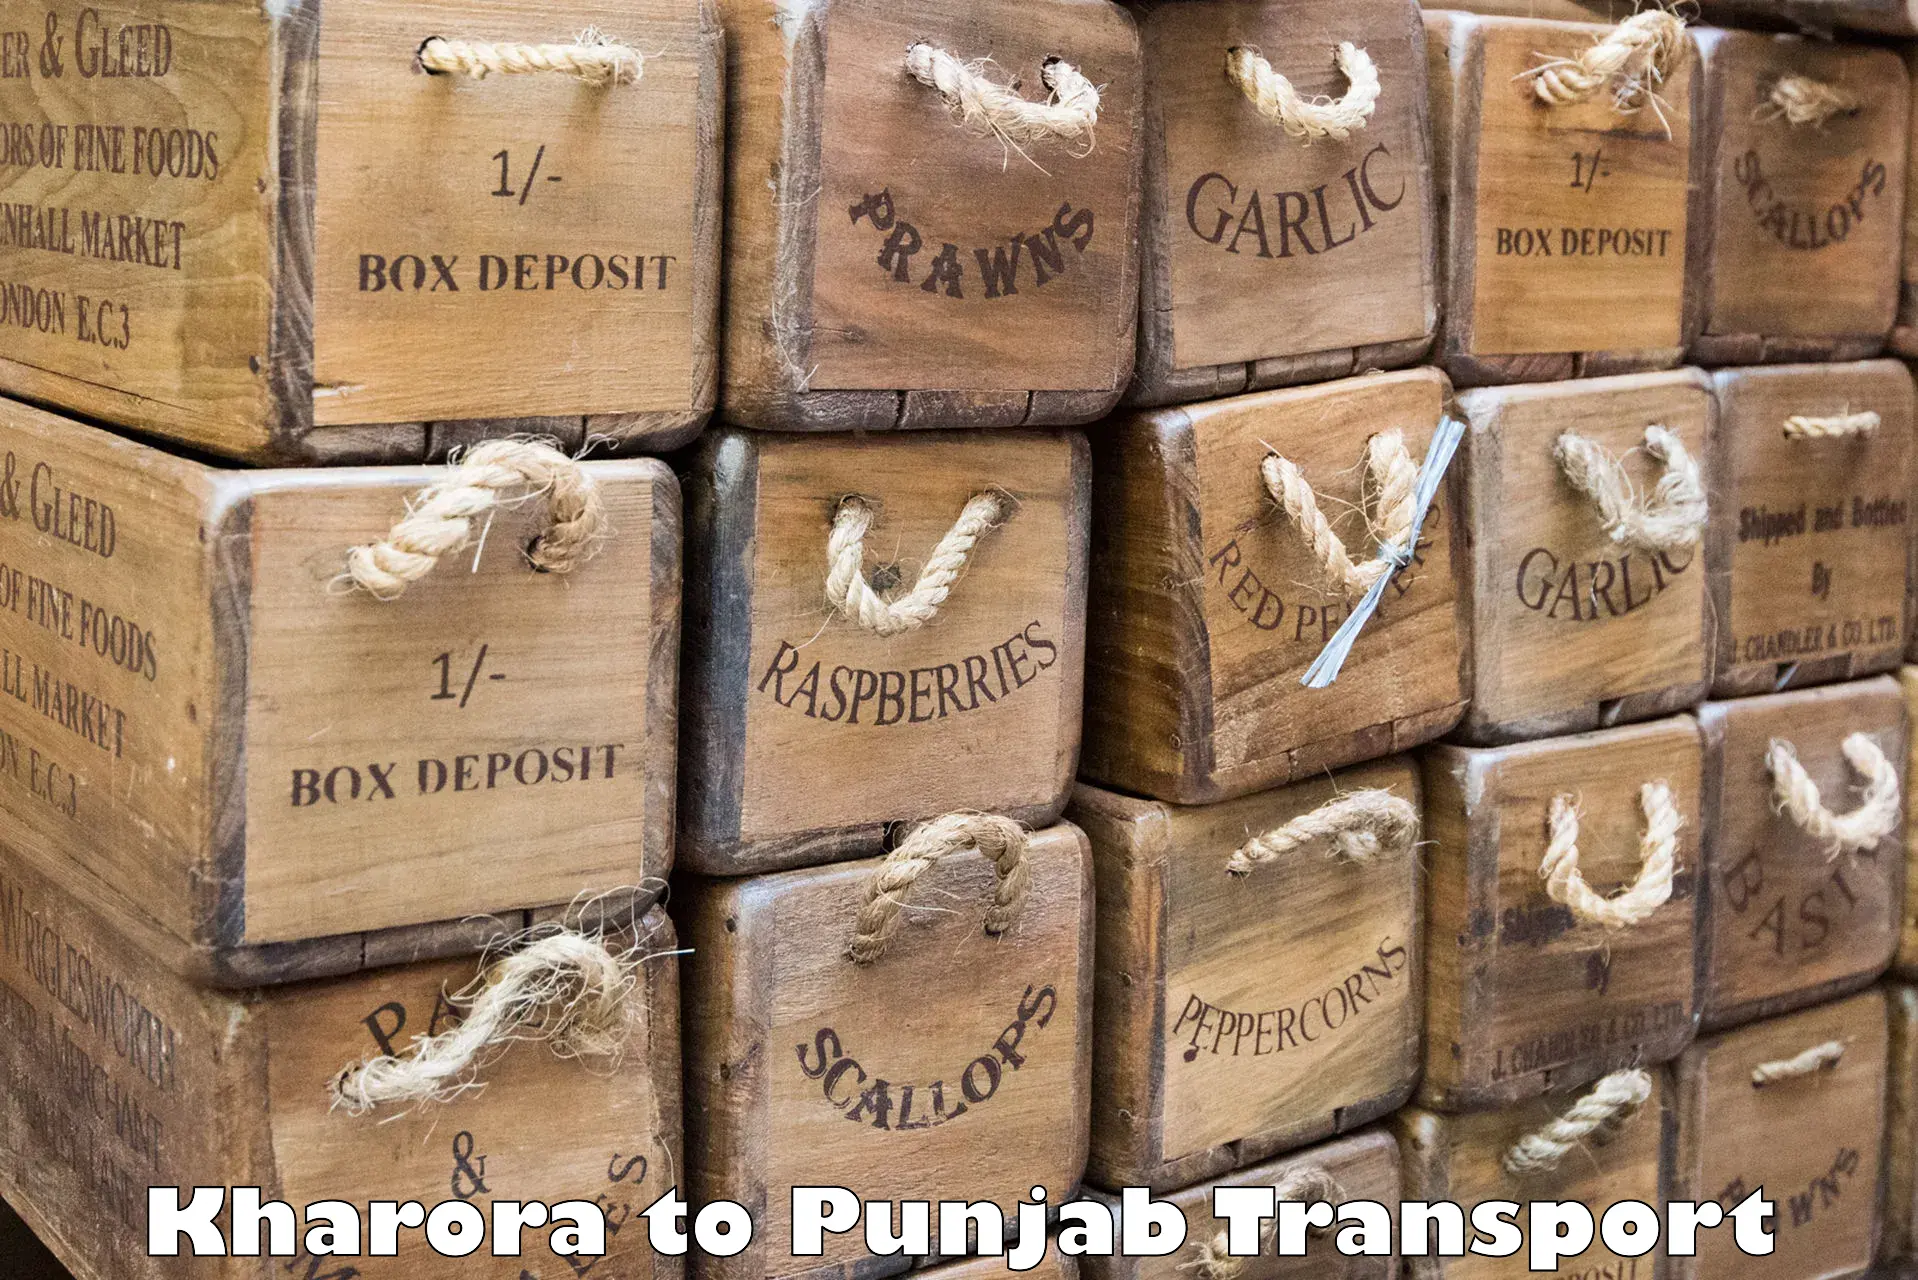 Express transport services Kharora to Machhiwara